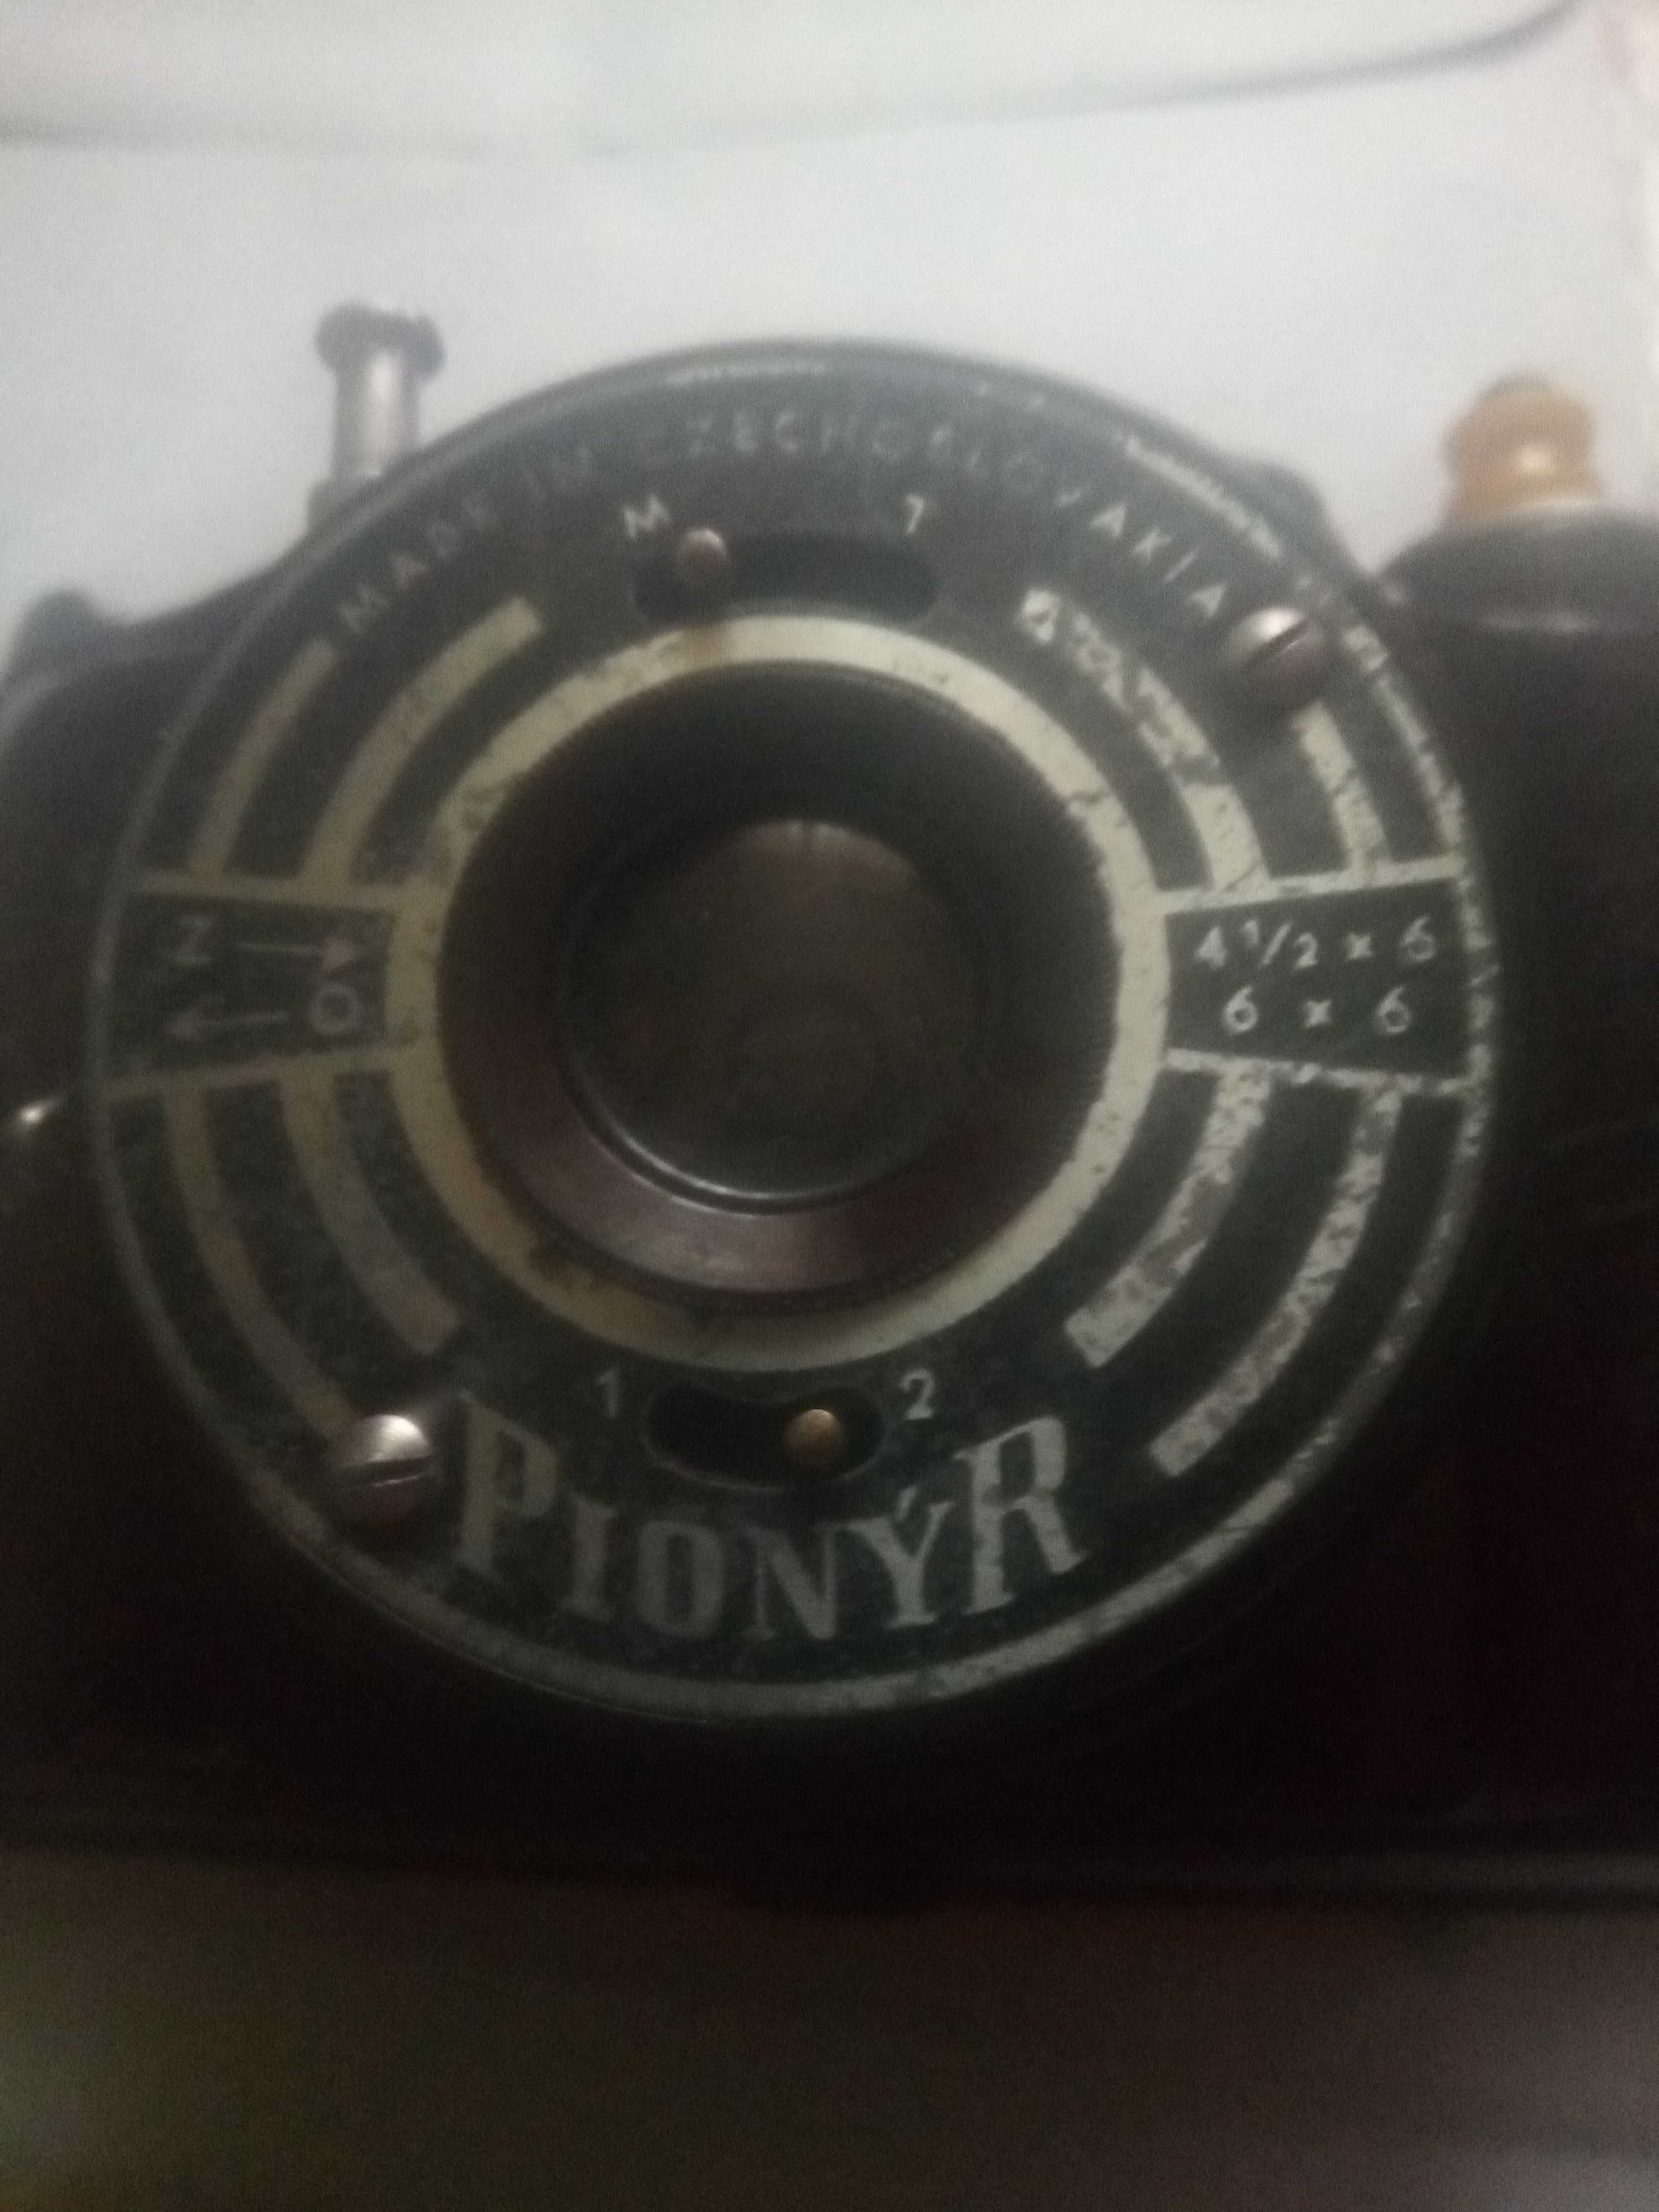 Aparat fotograficzny Pionyr